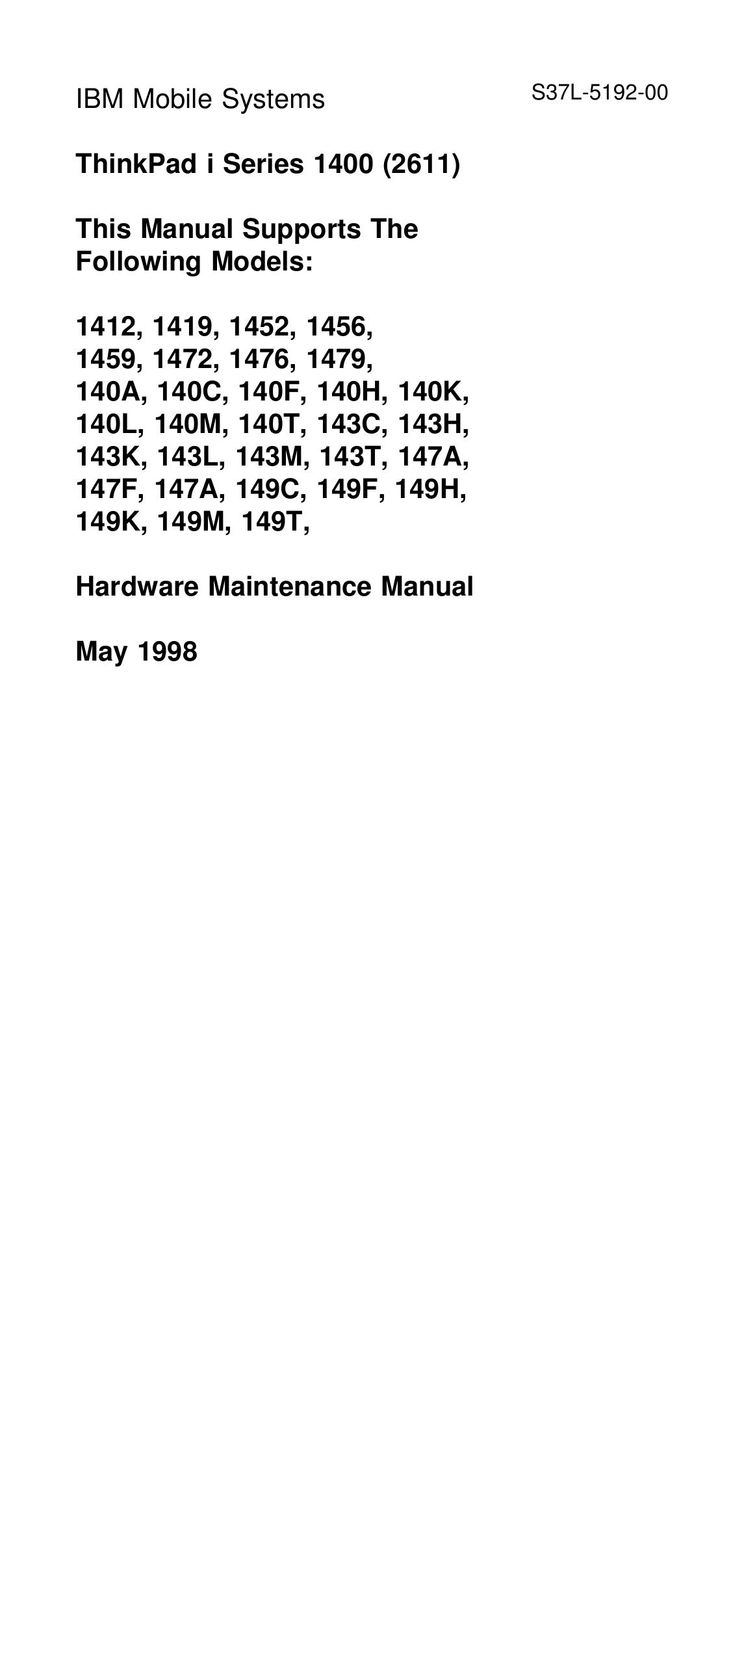 IBM 143T Laptop User Manual